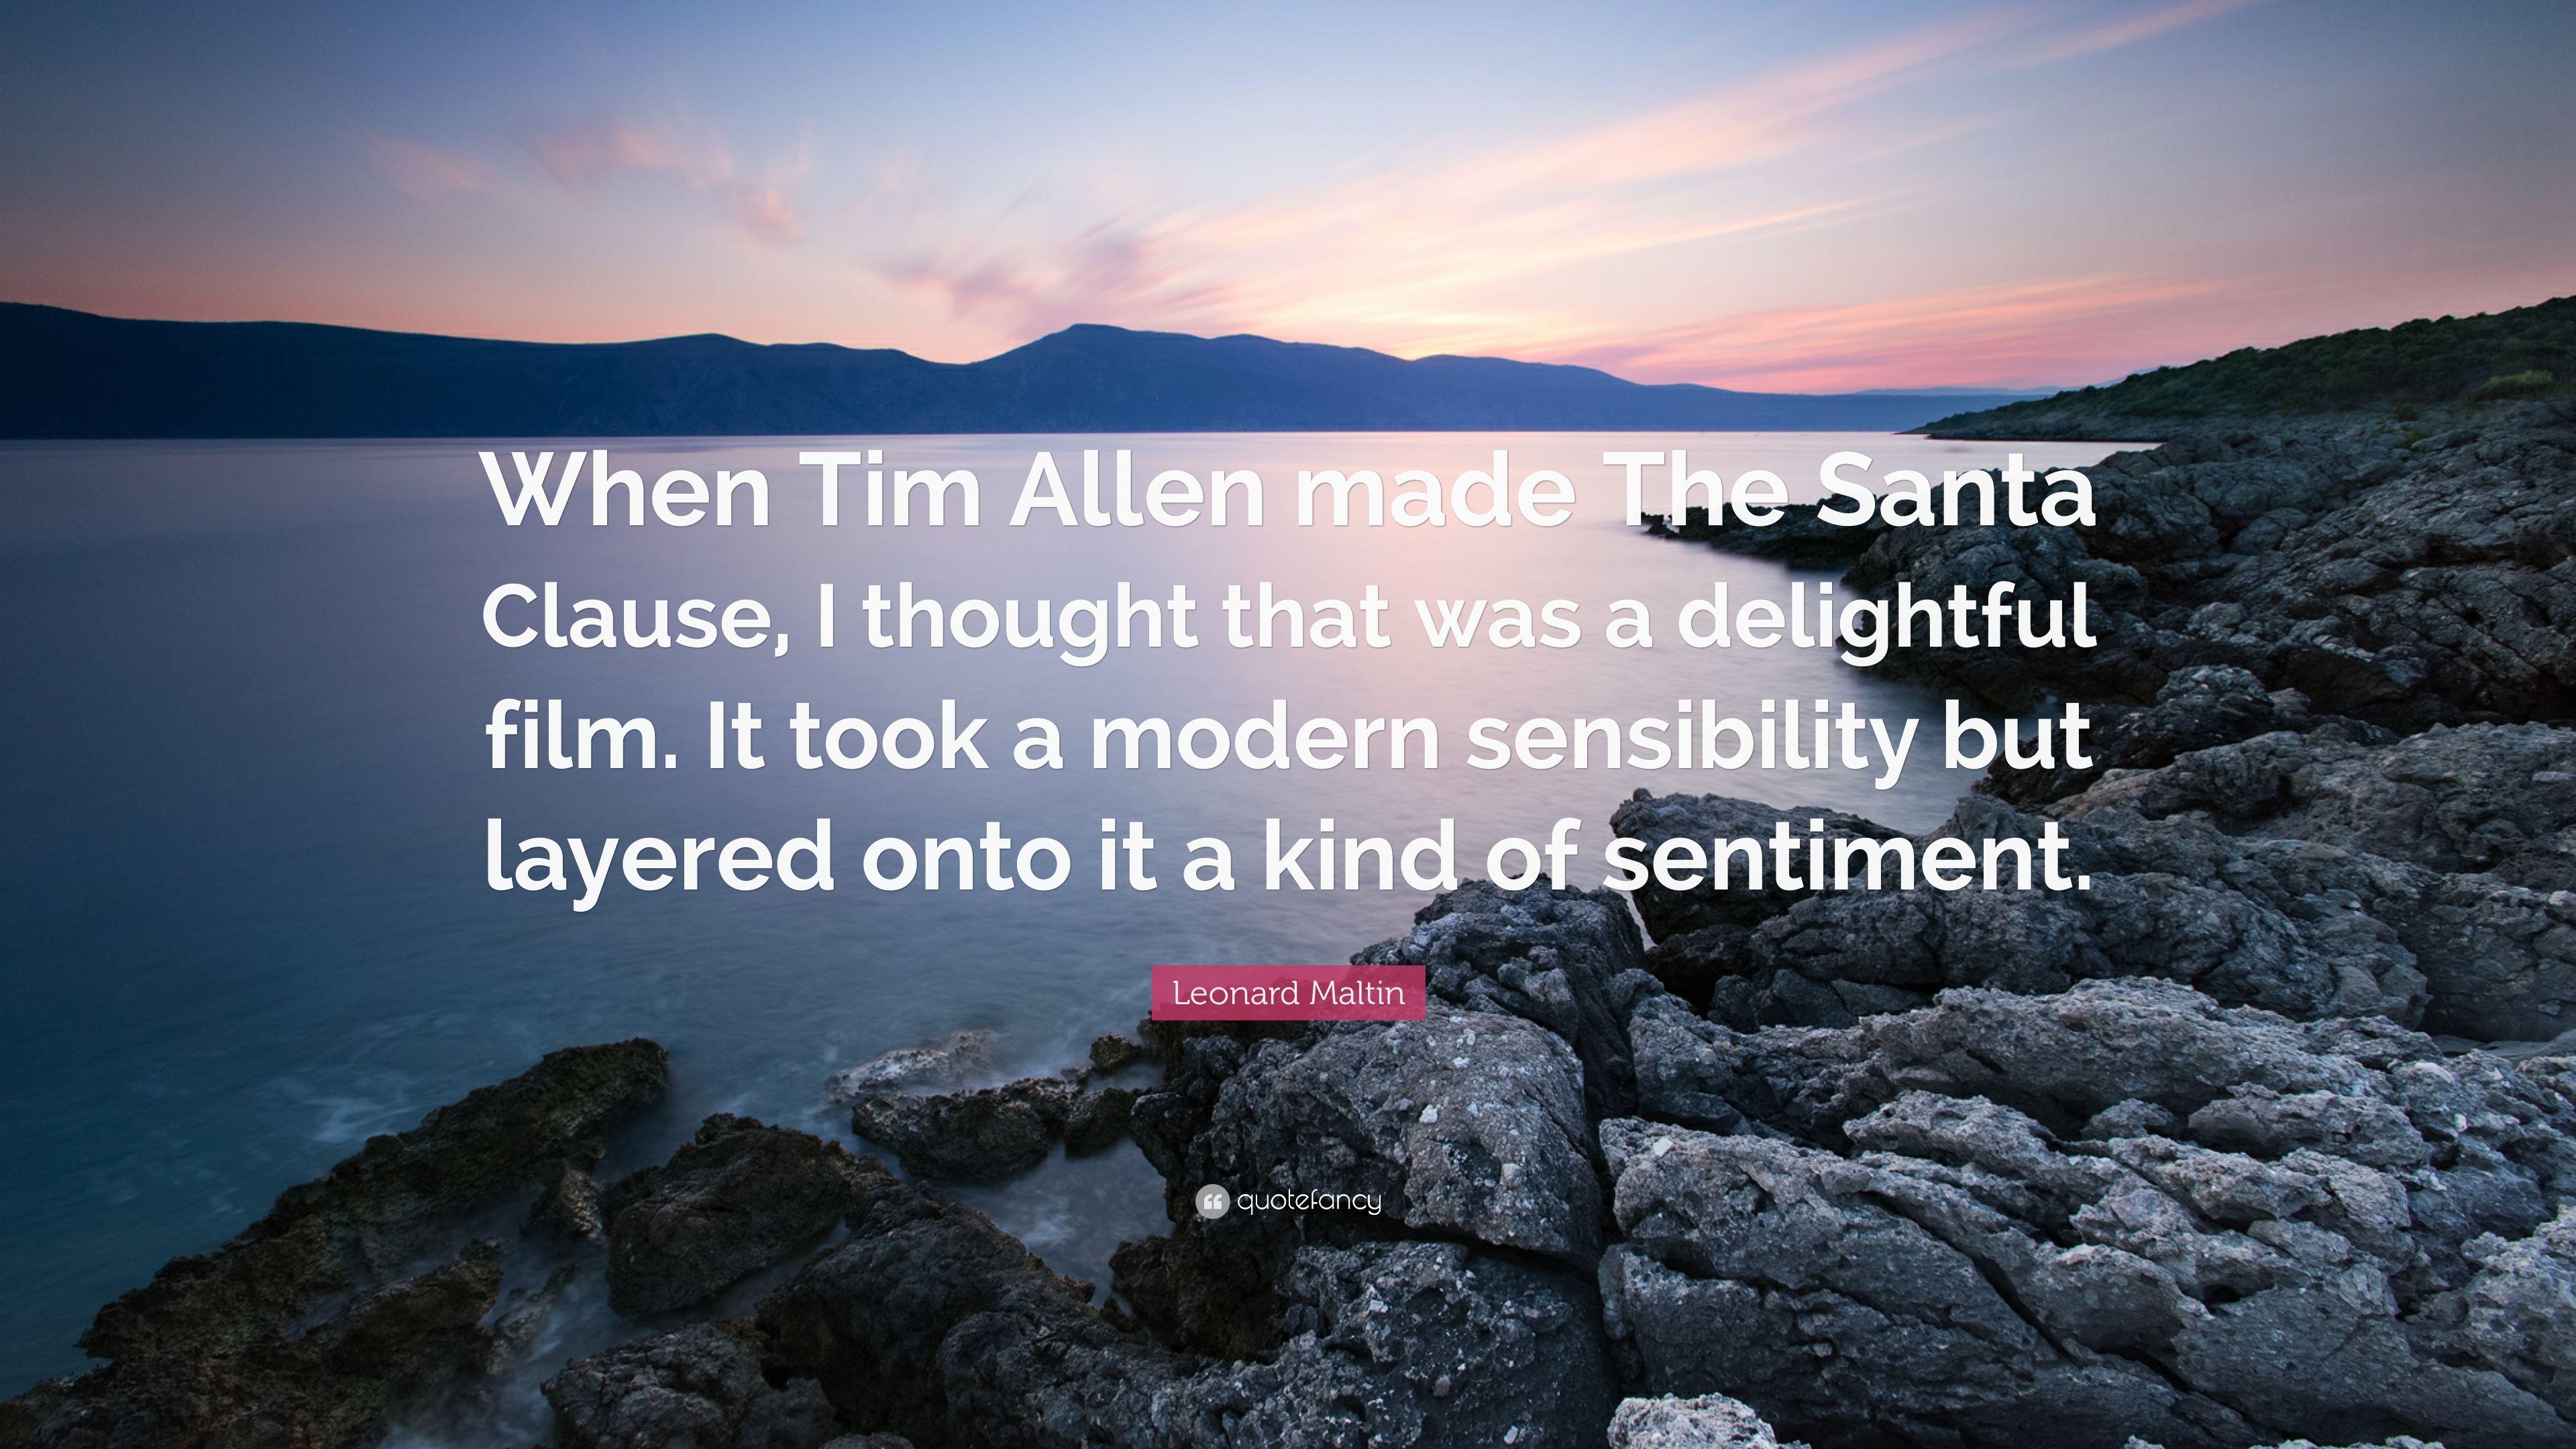 Leonard Maltin Quote: “When Tim Allen made The Santa Clause, I